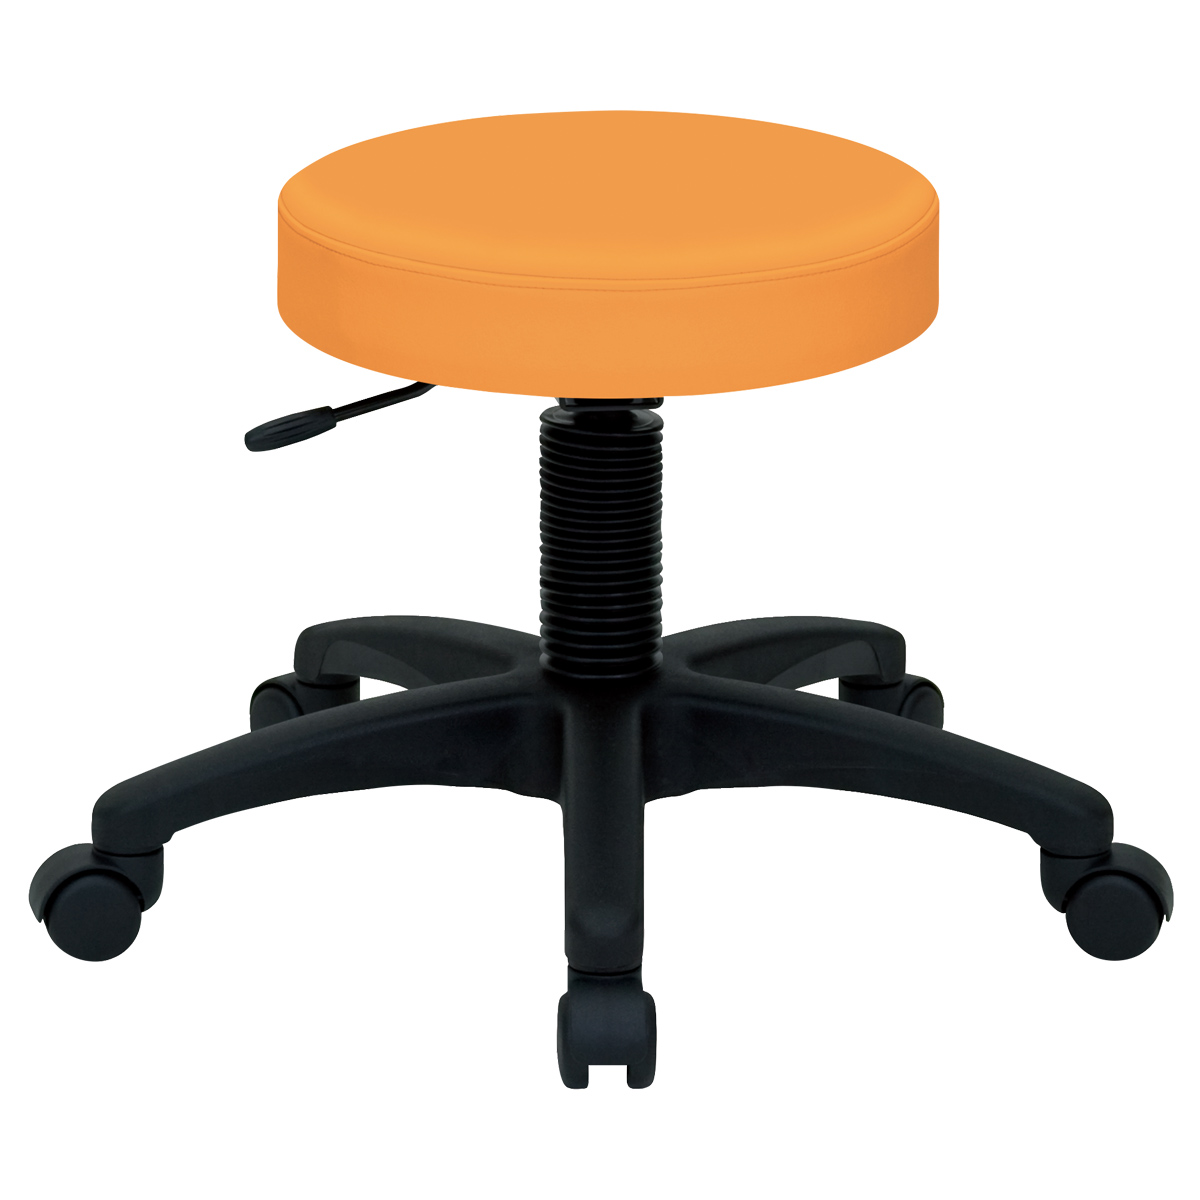 ホスピタルチェア 幅530 奥行550 高さ420-500 オレンジ チェア ミーティングチェア スツール 椅子 ラウンジチェア ホスピタルチェア オレンジ キャスター メーカ